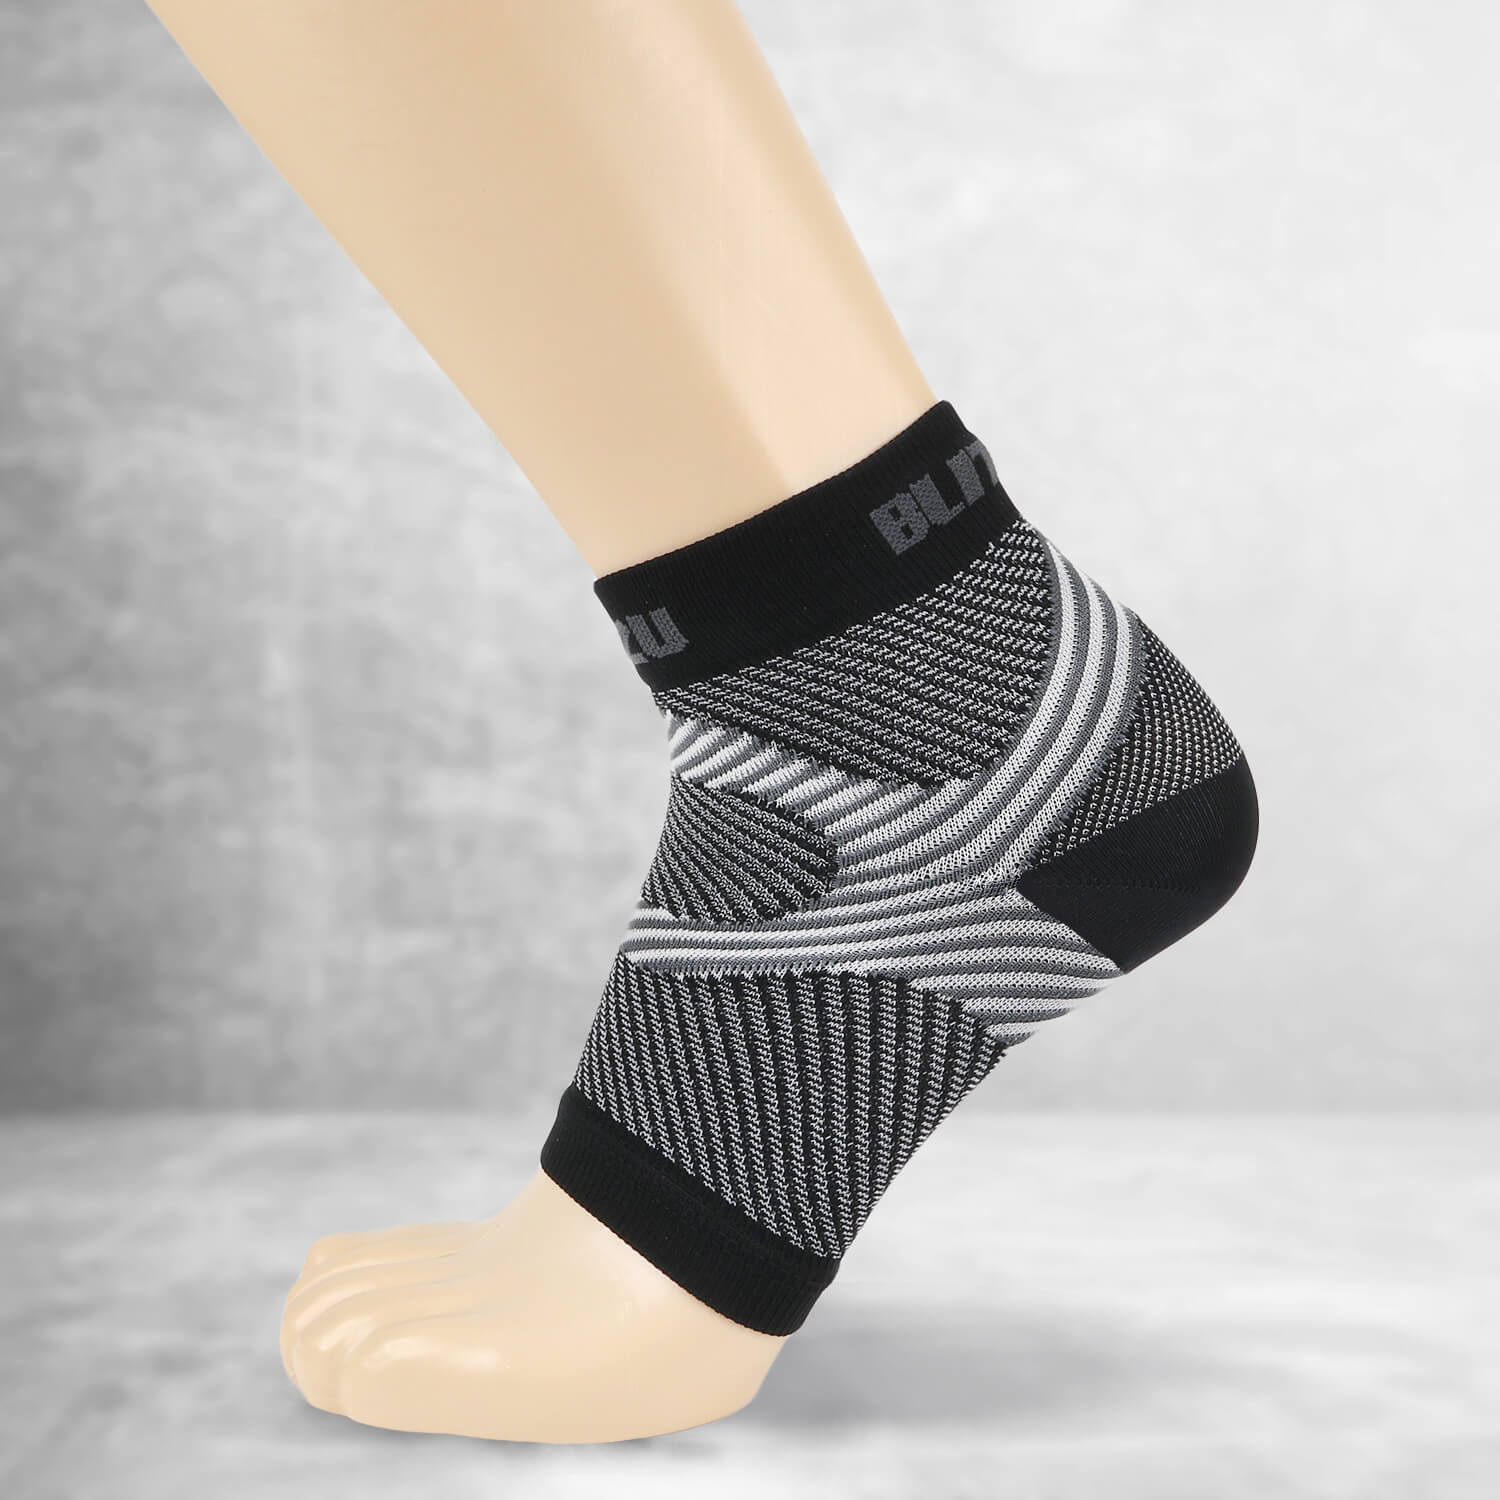 BLITZU Compression Socks Men - Footless Compression Socks for